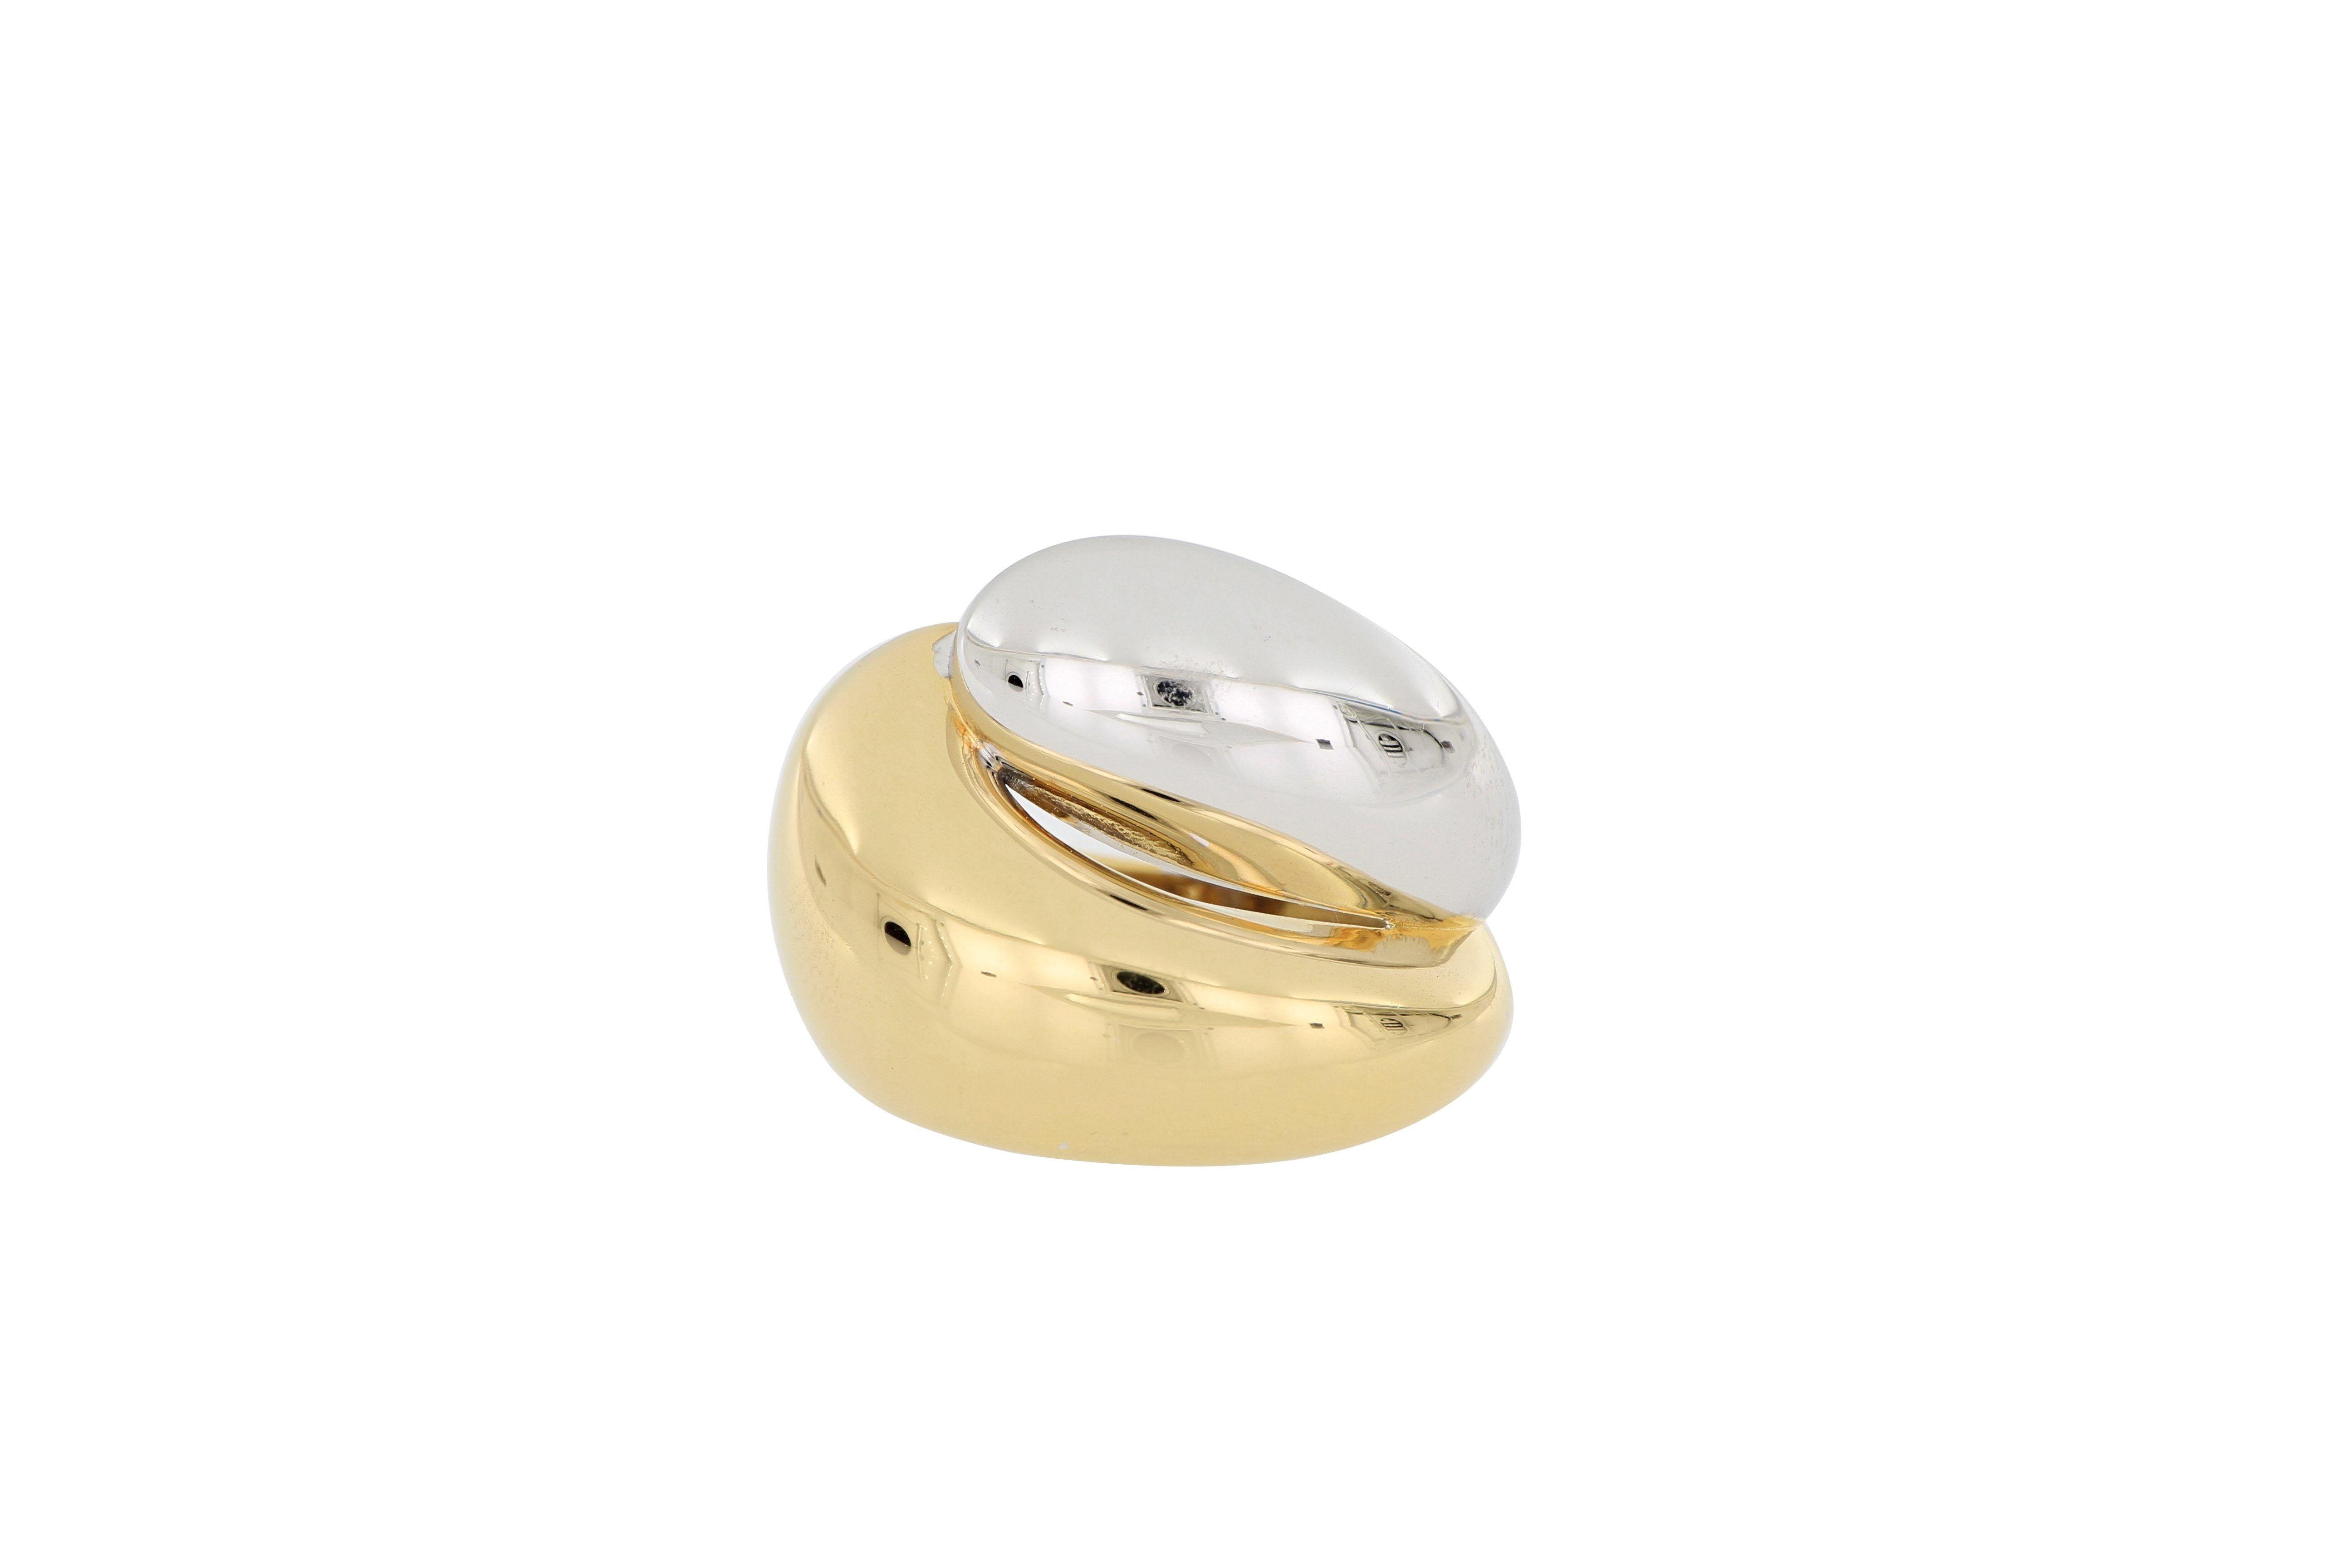 Ein stilvoller zweifarbiger italienischer Ring aus 18 Karat Gelb- und Gelbgold. 
Ein sehr schöner Ring mit einfachem und elegantem Design, der zu jedem Anlass getragen werden kann.
O'Che 1867 wurde vor anderthalb Jahrhunderten in Macau gegründet.